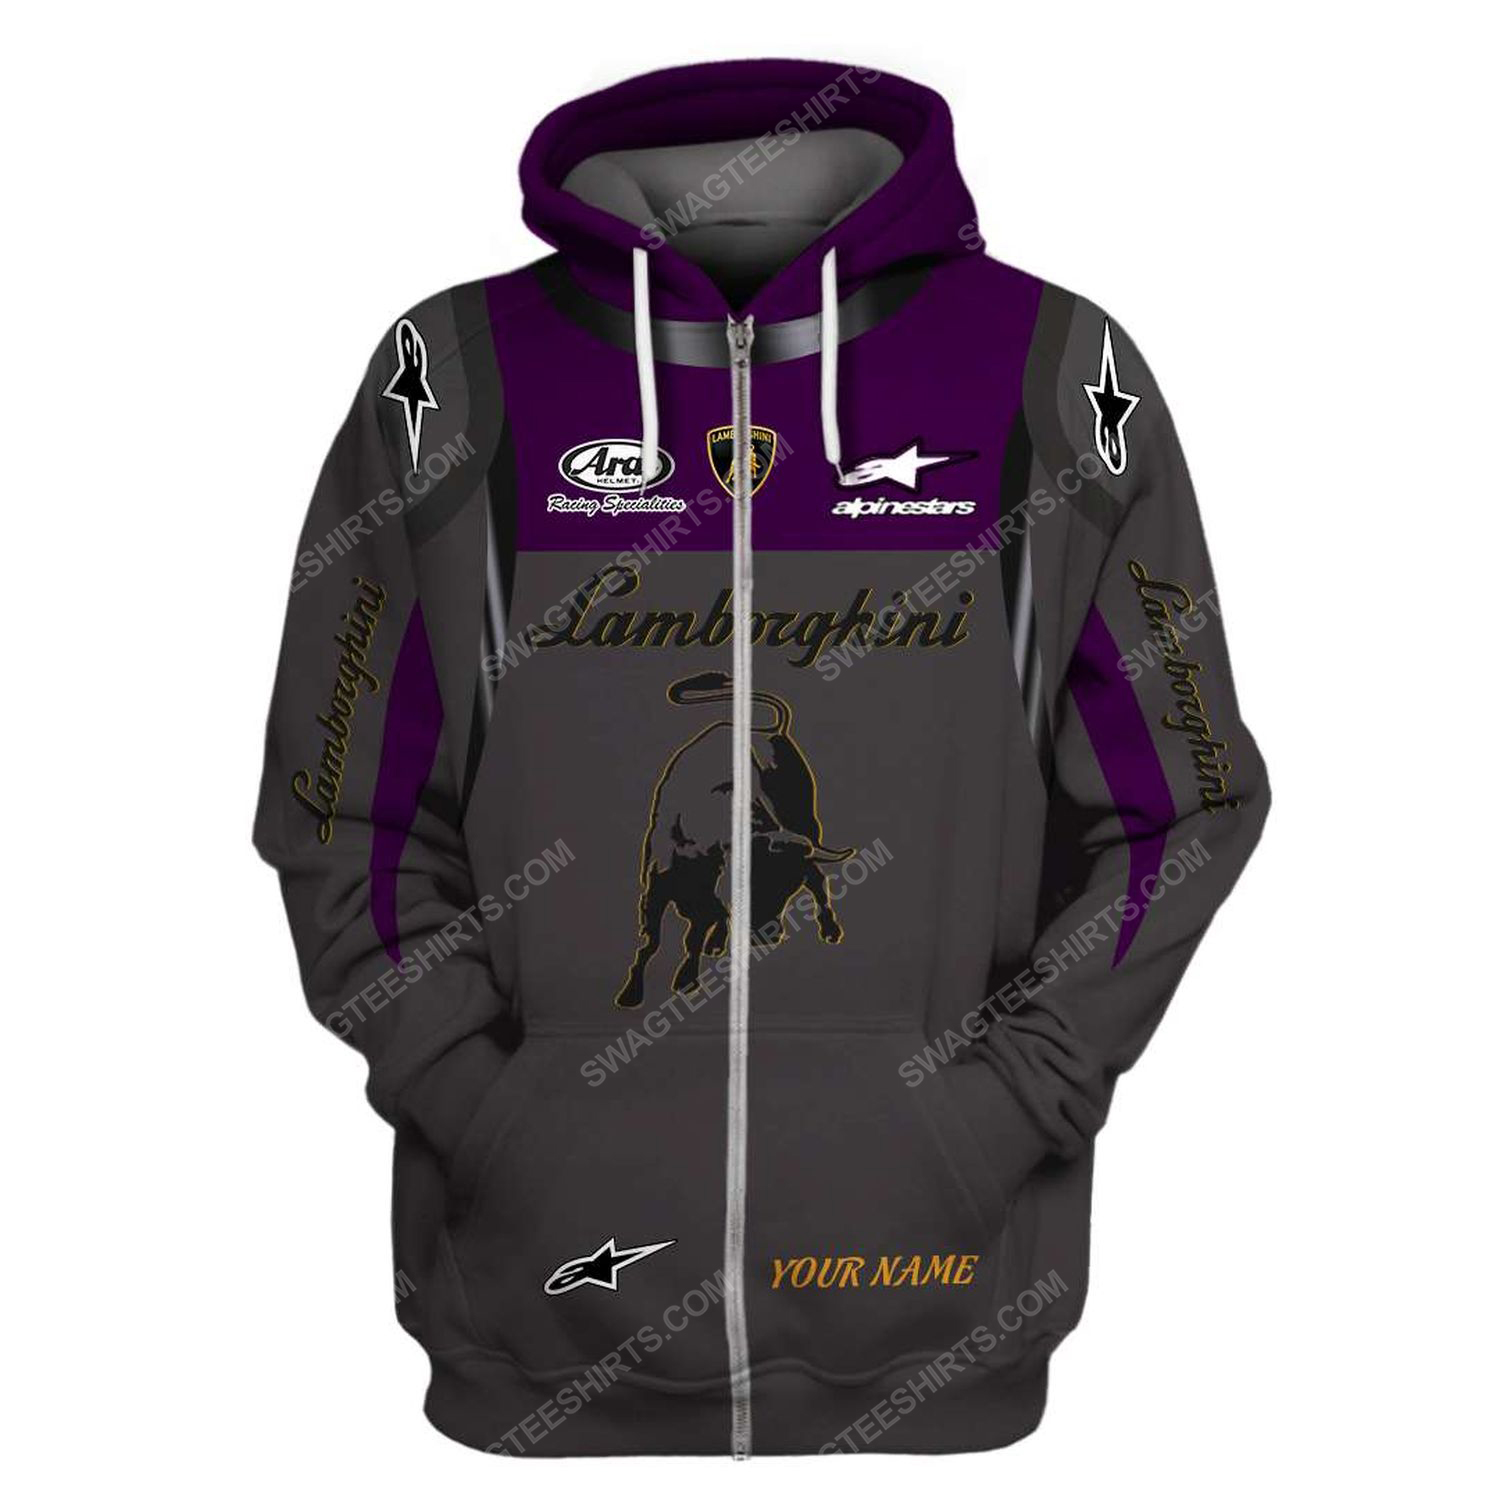 Custom lamborghini squadra corse racing team motorsport full printing zip hoodie